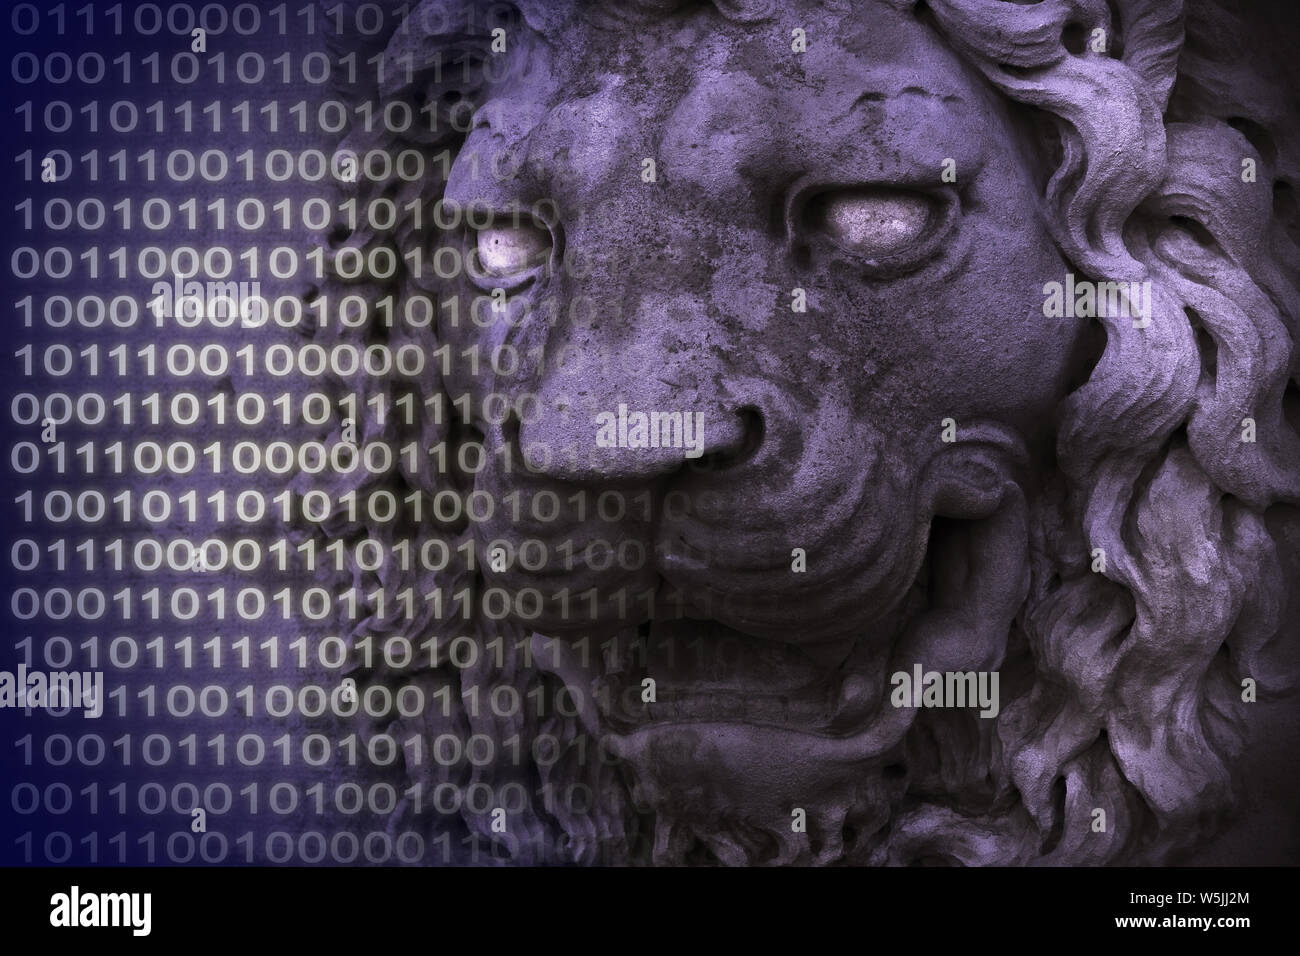 Proteggete i vostri dati. Concetto di immagine medievale con testa di leone e codice binario. Foto Stock